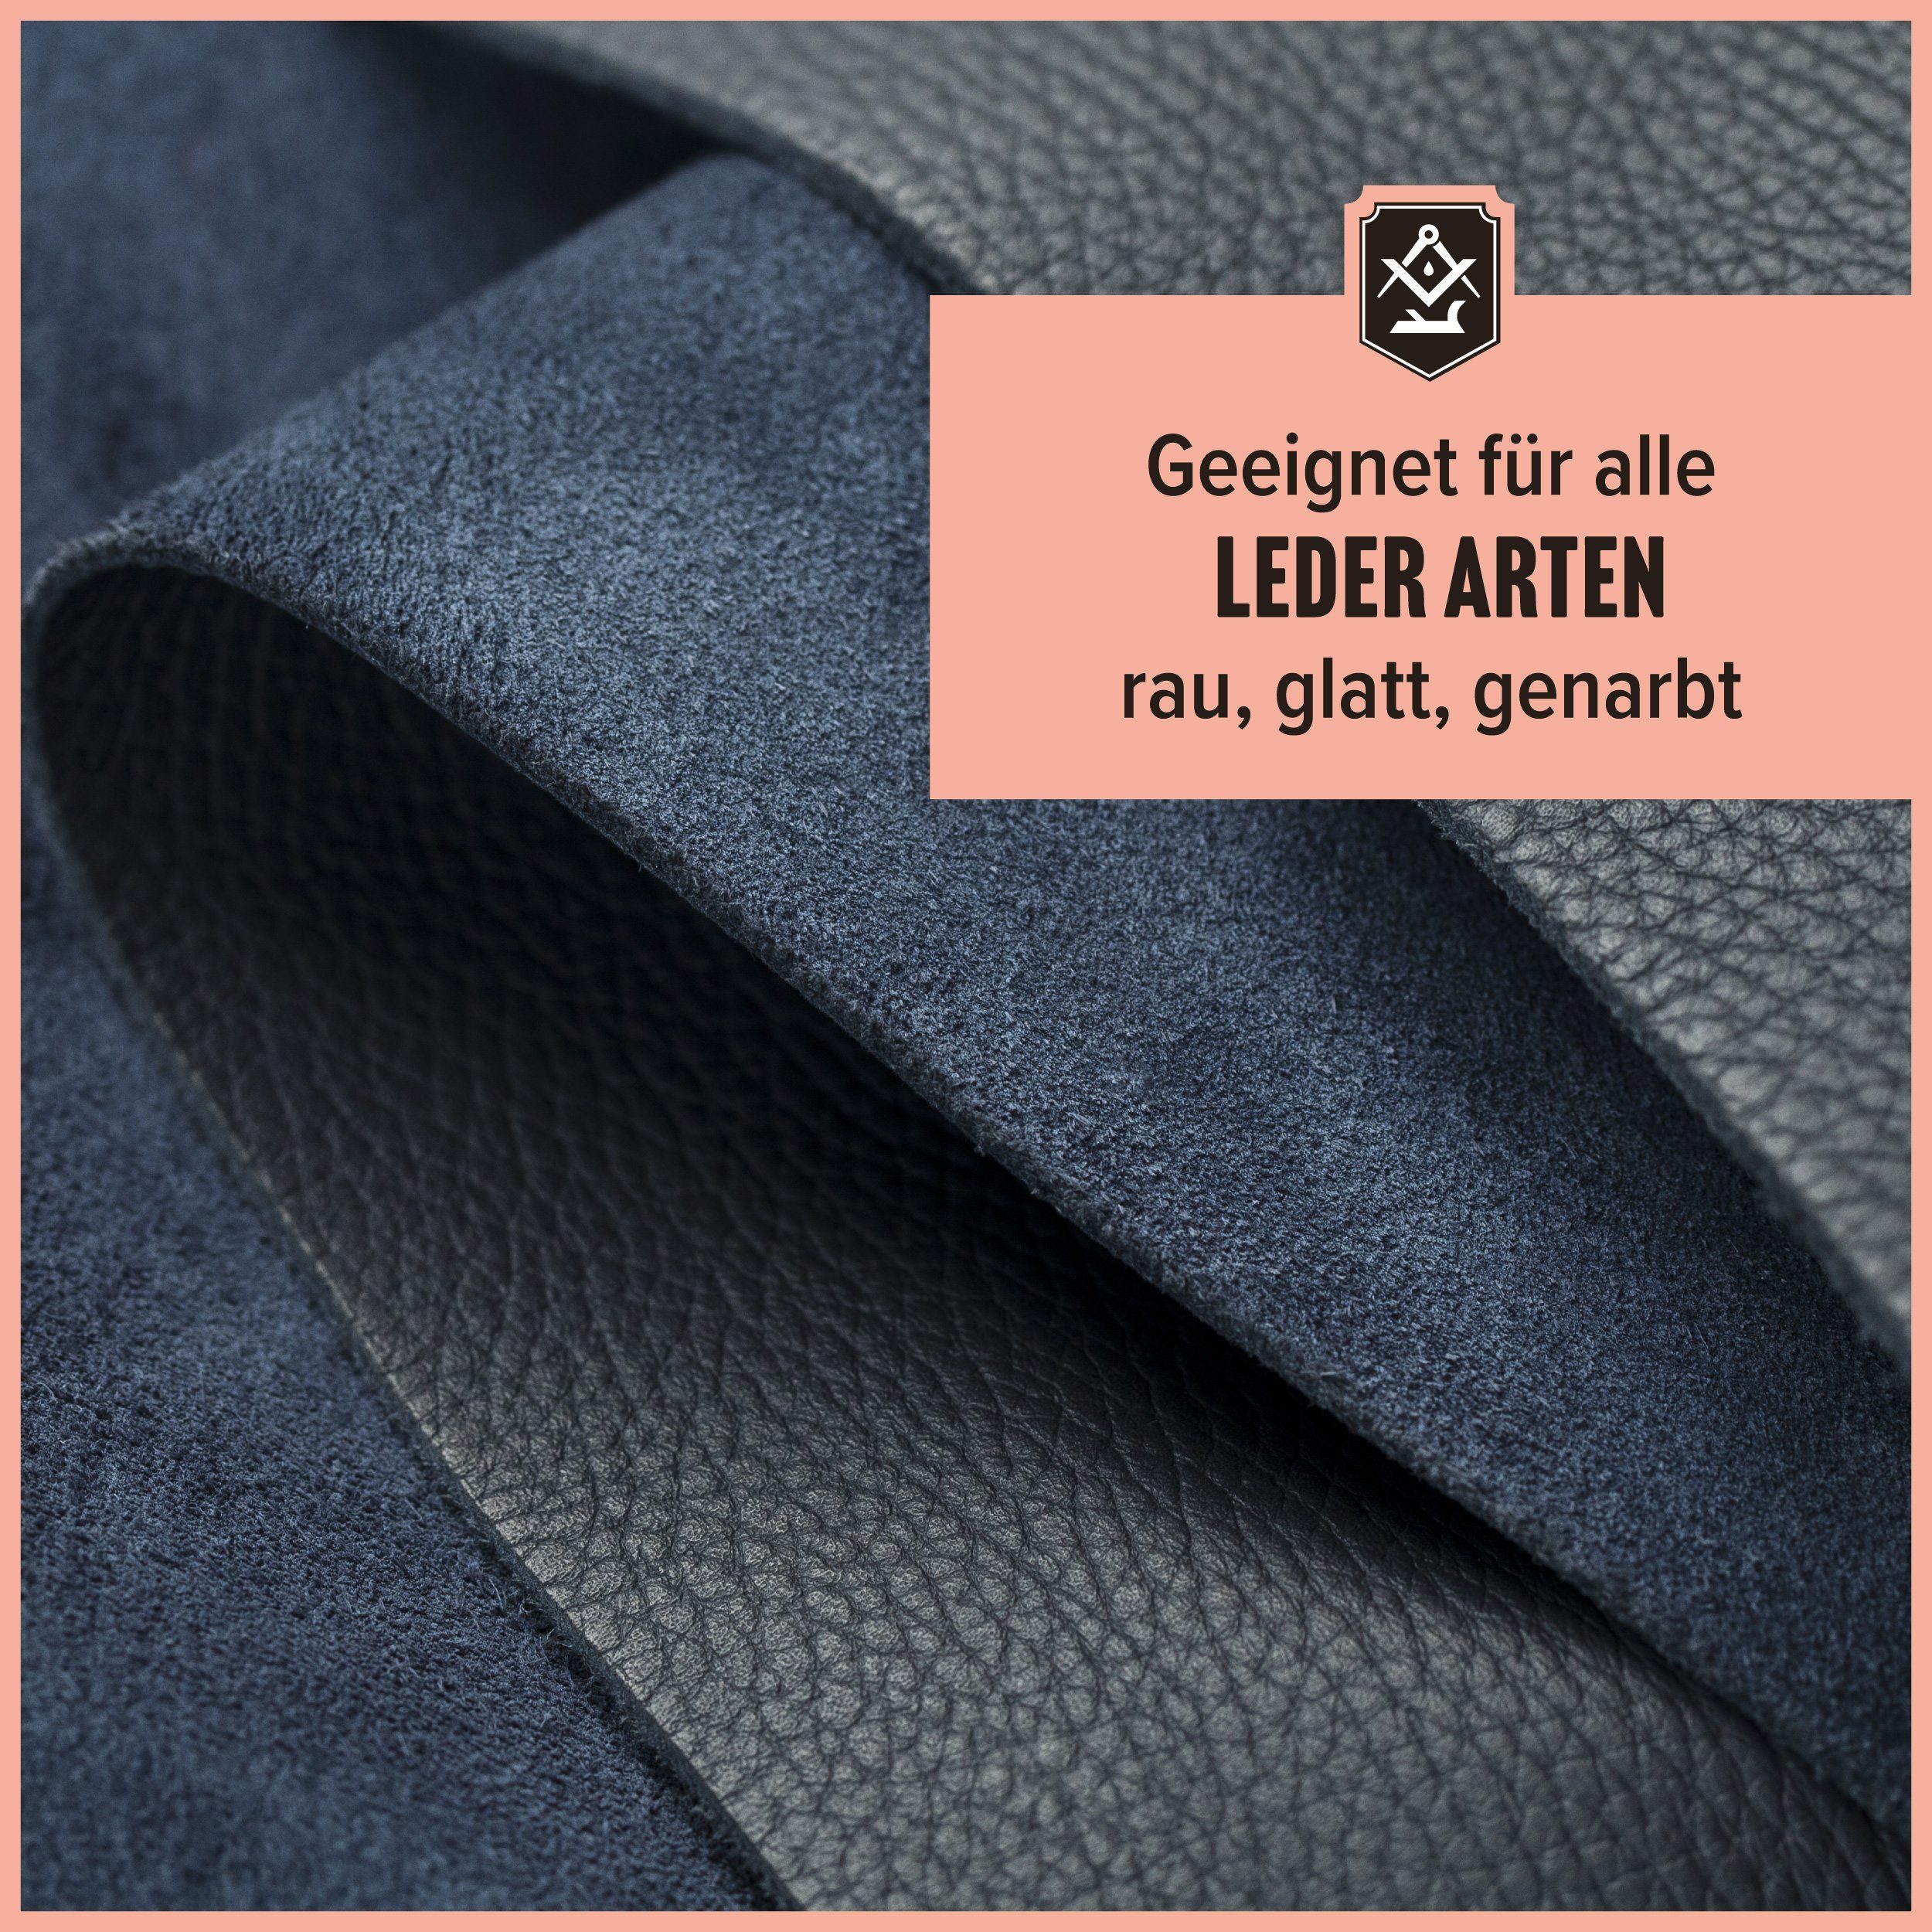 Leder - einfachen von Germany) Set + zweiteiliges Leder Schrader Lederreiniger Baumwolltuch Made in - Reinigung/Pflege Reiniger (zur